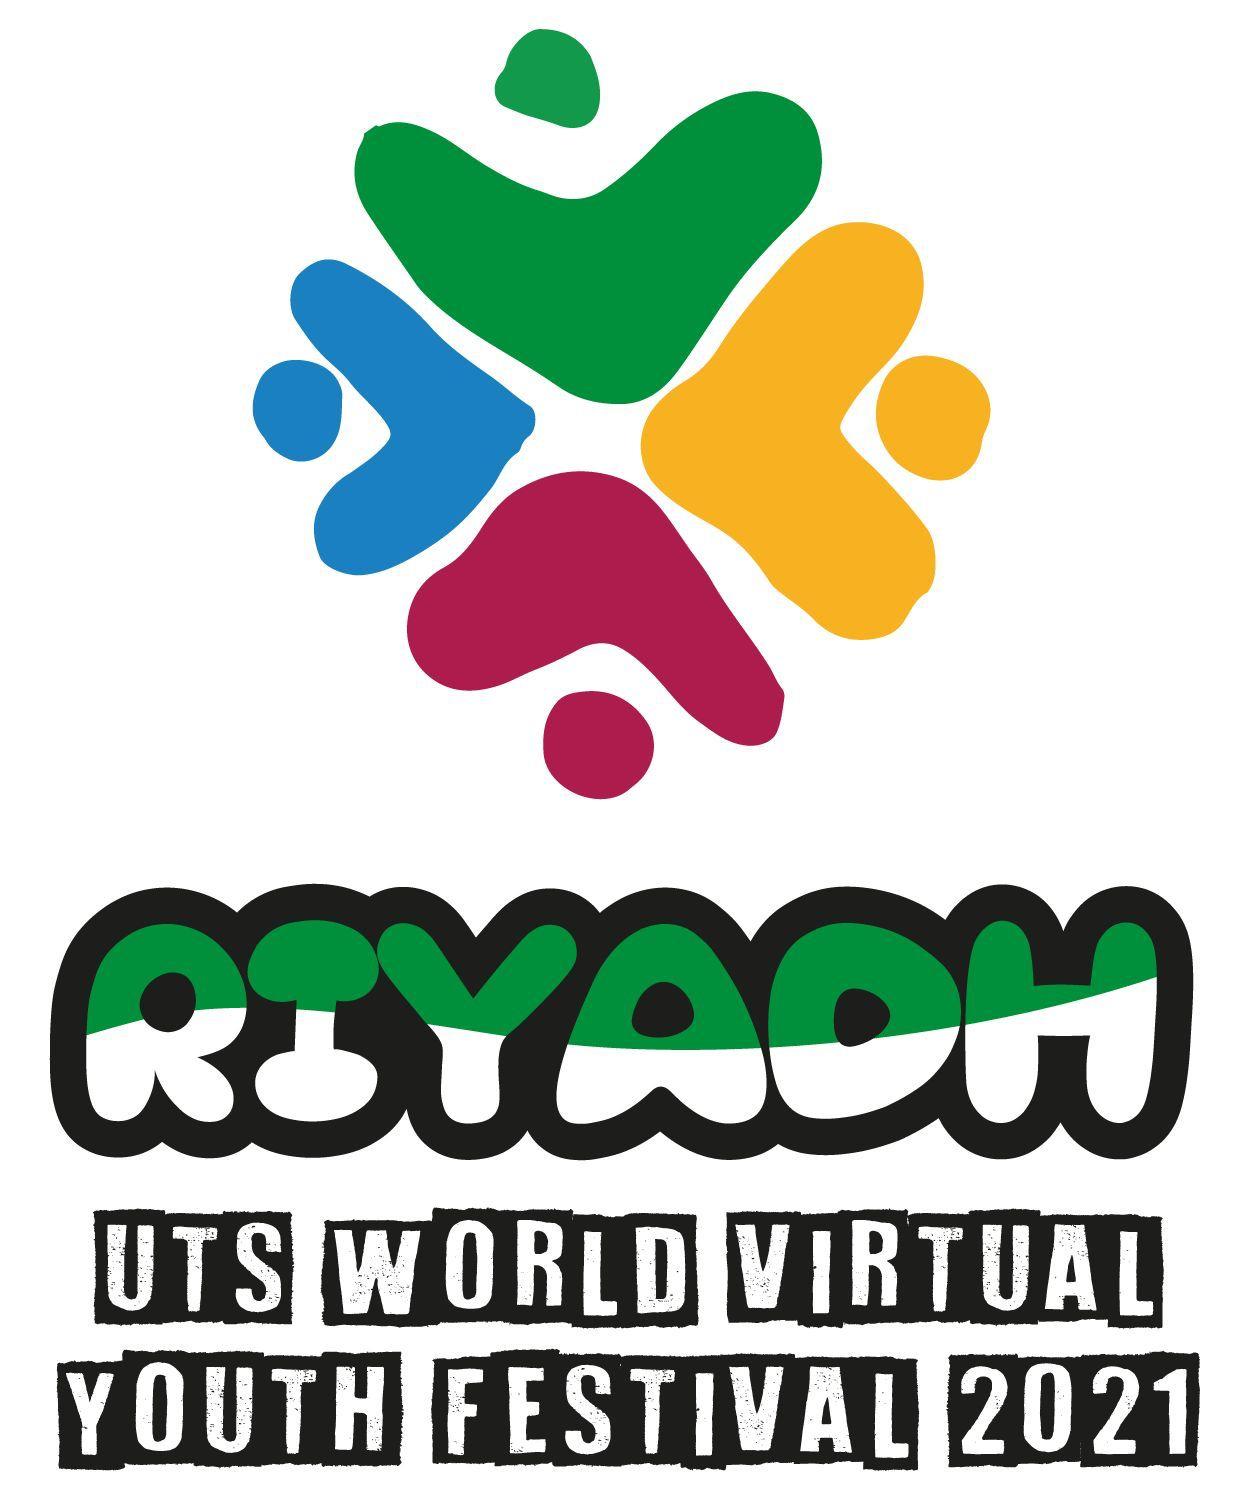 غداً افتتاح المهرجان الدولي الافتراضي متحدون من خلال الرياضة العالمي للشباب 2021